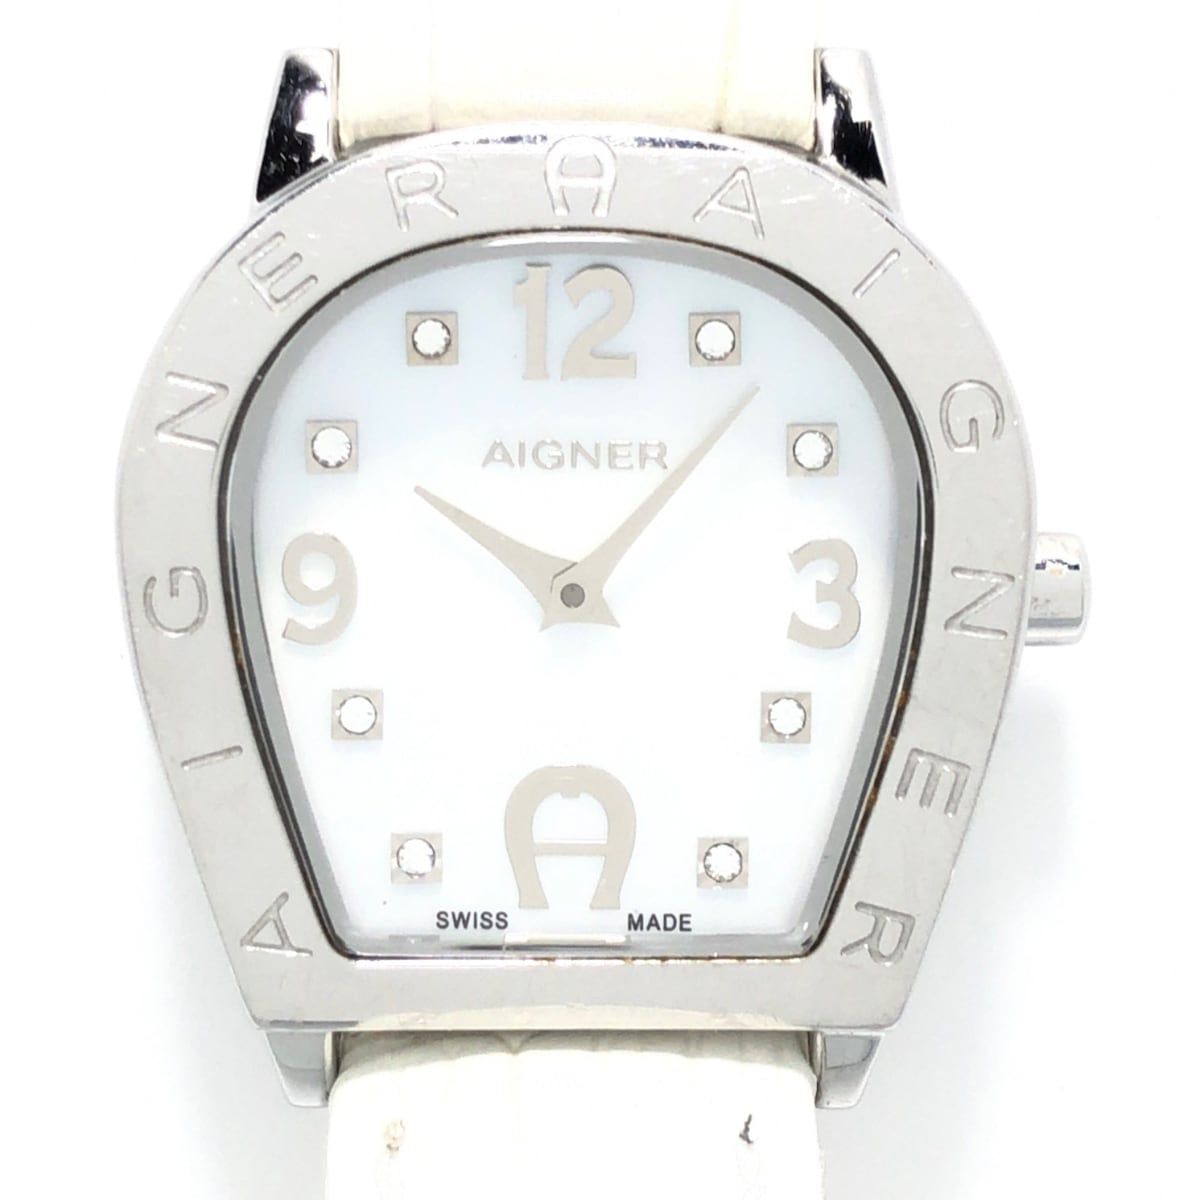 AIGNER(アイグナー) 腕時計 - A32200 レディース ラインストーン ホワイトシェルレディース